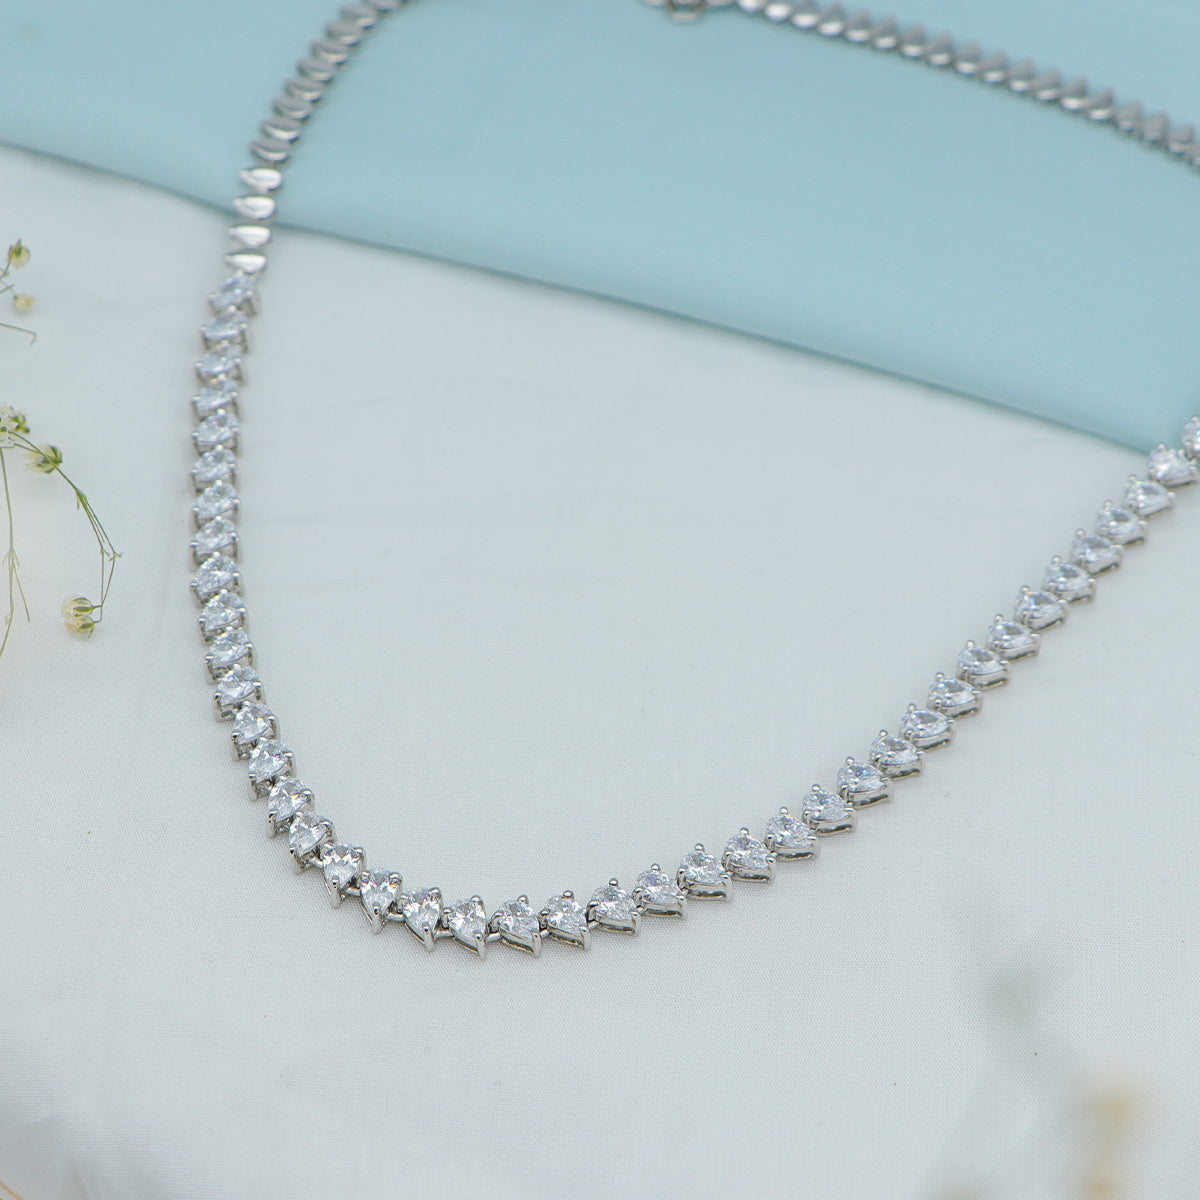 Isha Silver Necklace with Swarovski Zirconia